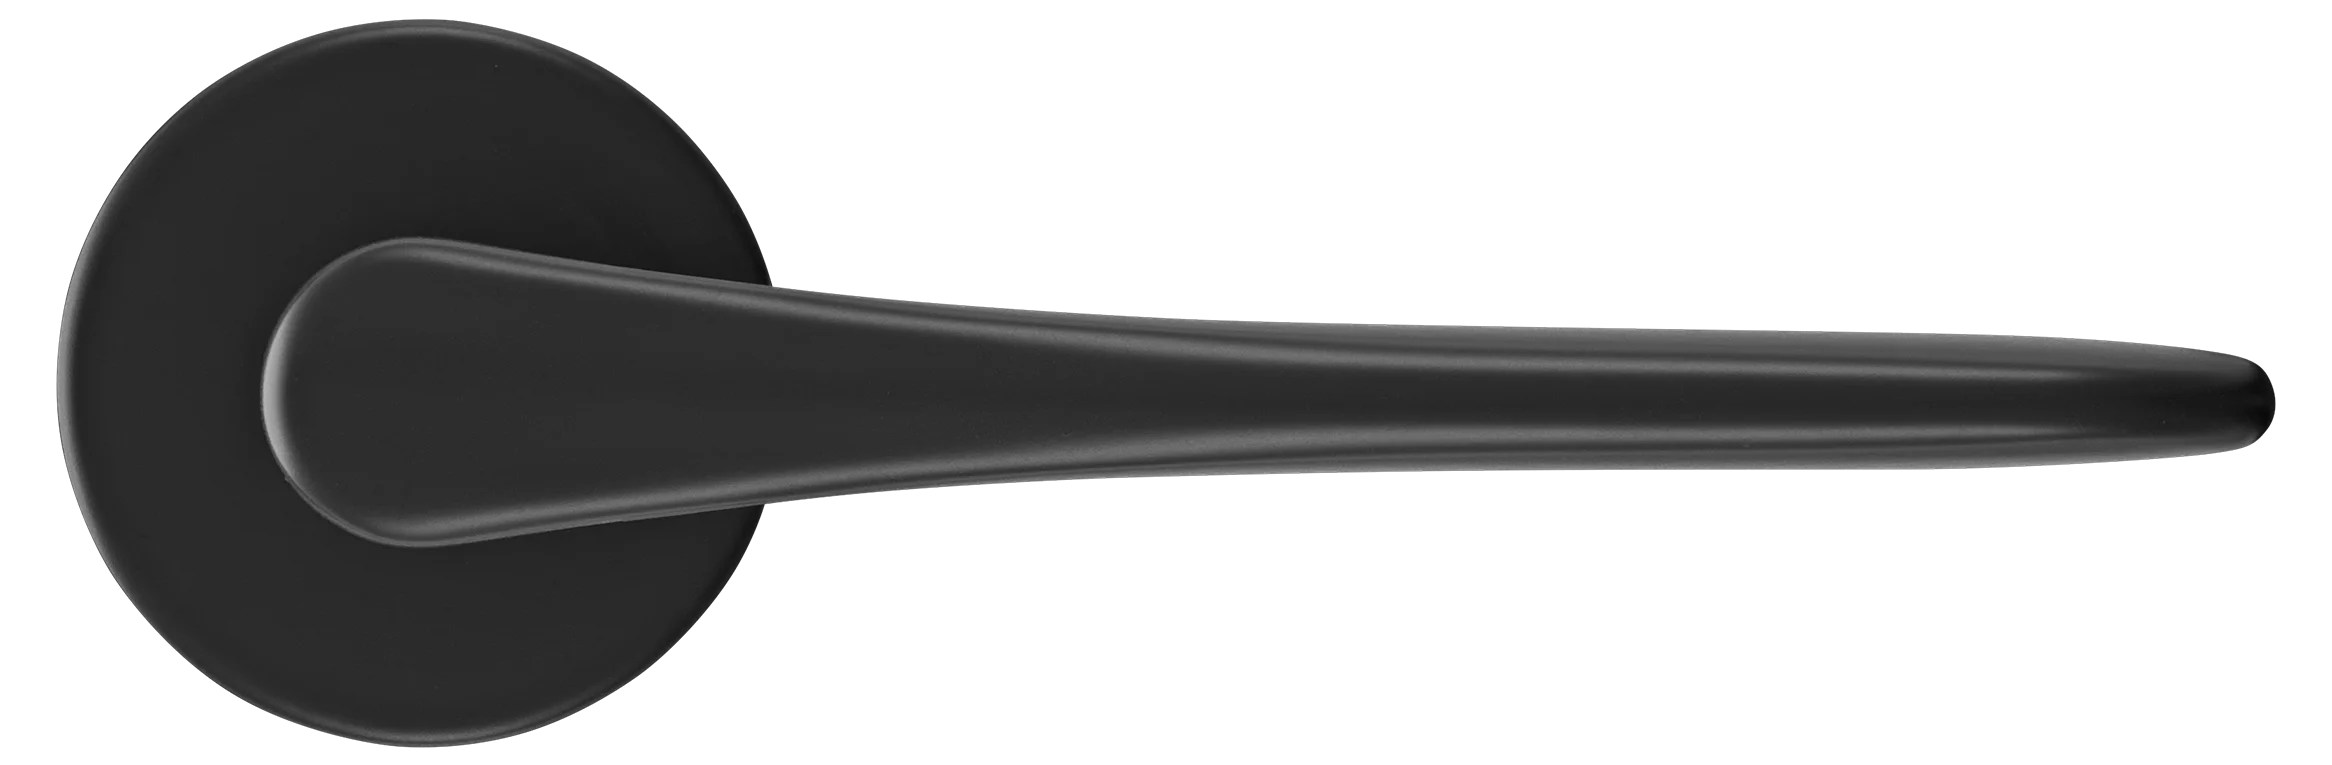 AULA R5 NERO, ручка дверная на розетке 7мм, цвет -  черный фото купить в Рязани